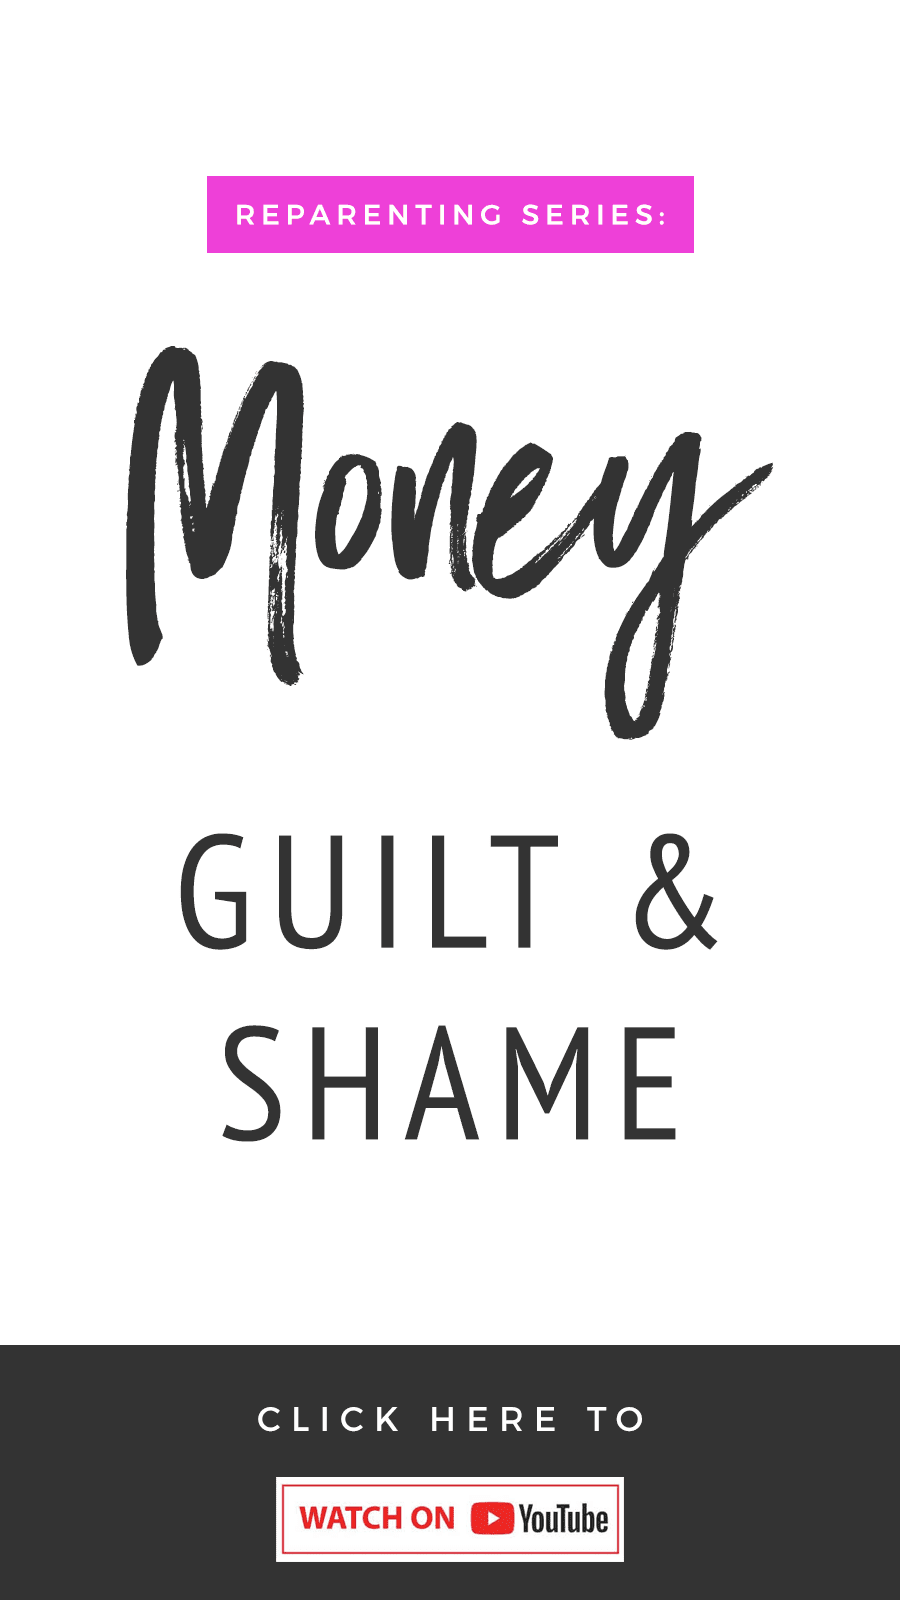 Reparenting Series: Money Shame & Guilt